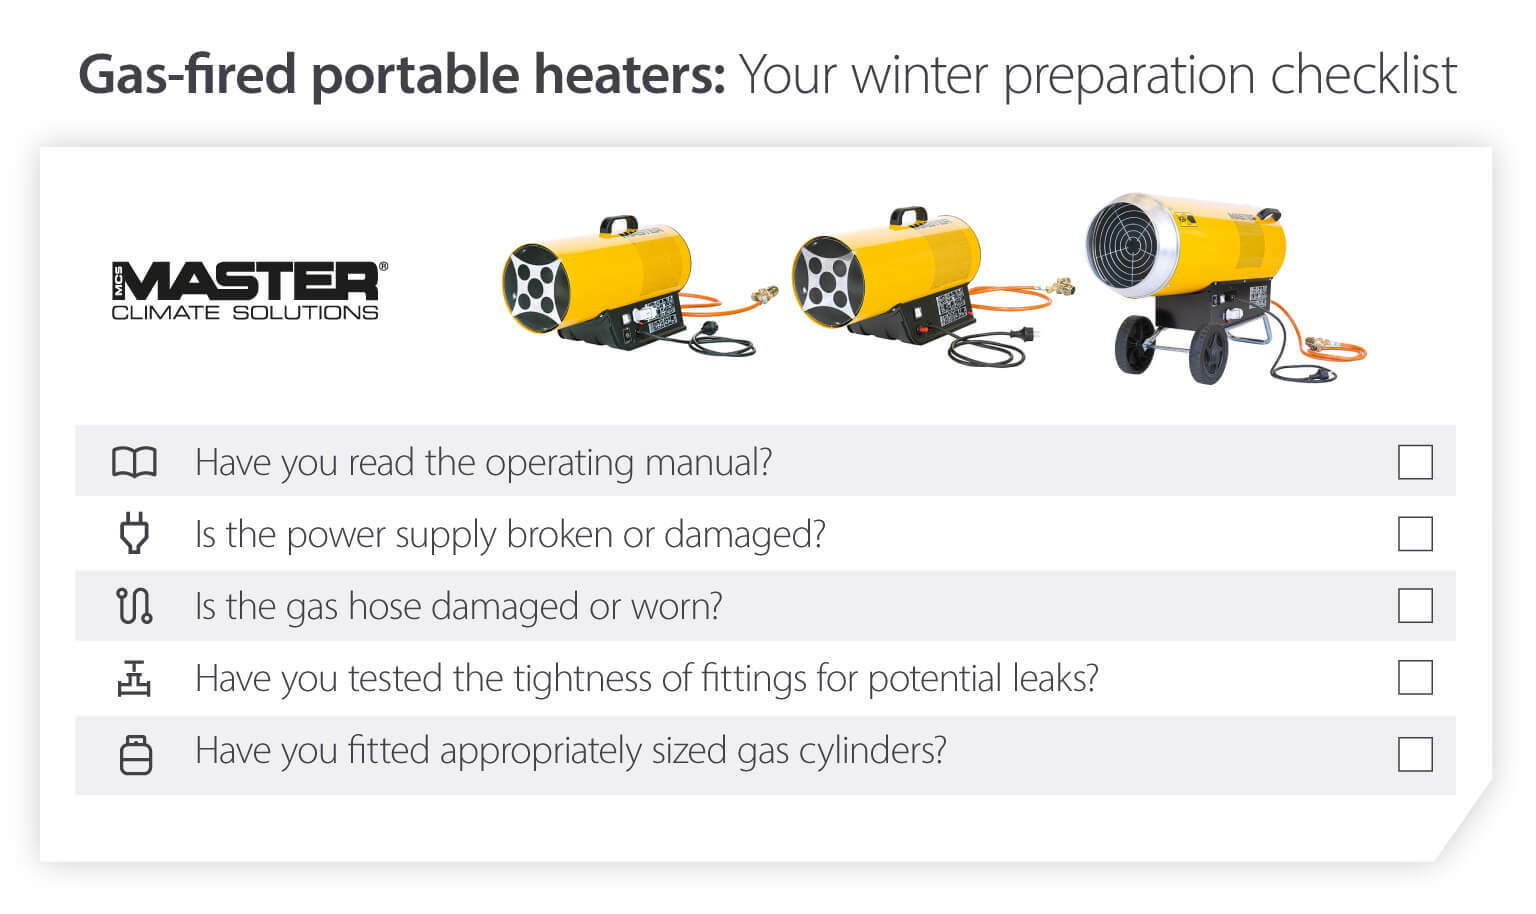 Checklista för förberedelse av gaseldade portabla värmare inför vintern för att säkerställa att värmarna fungerar i kalla temperaturer – infografik